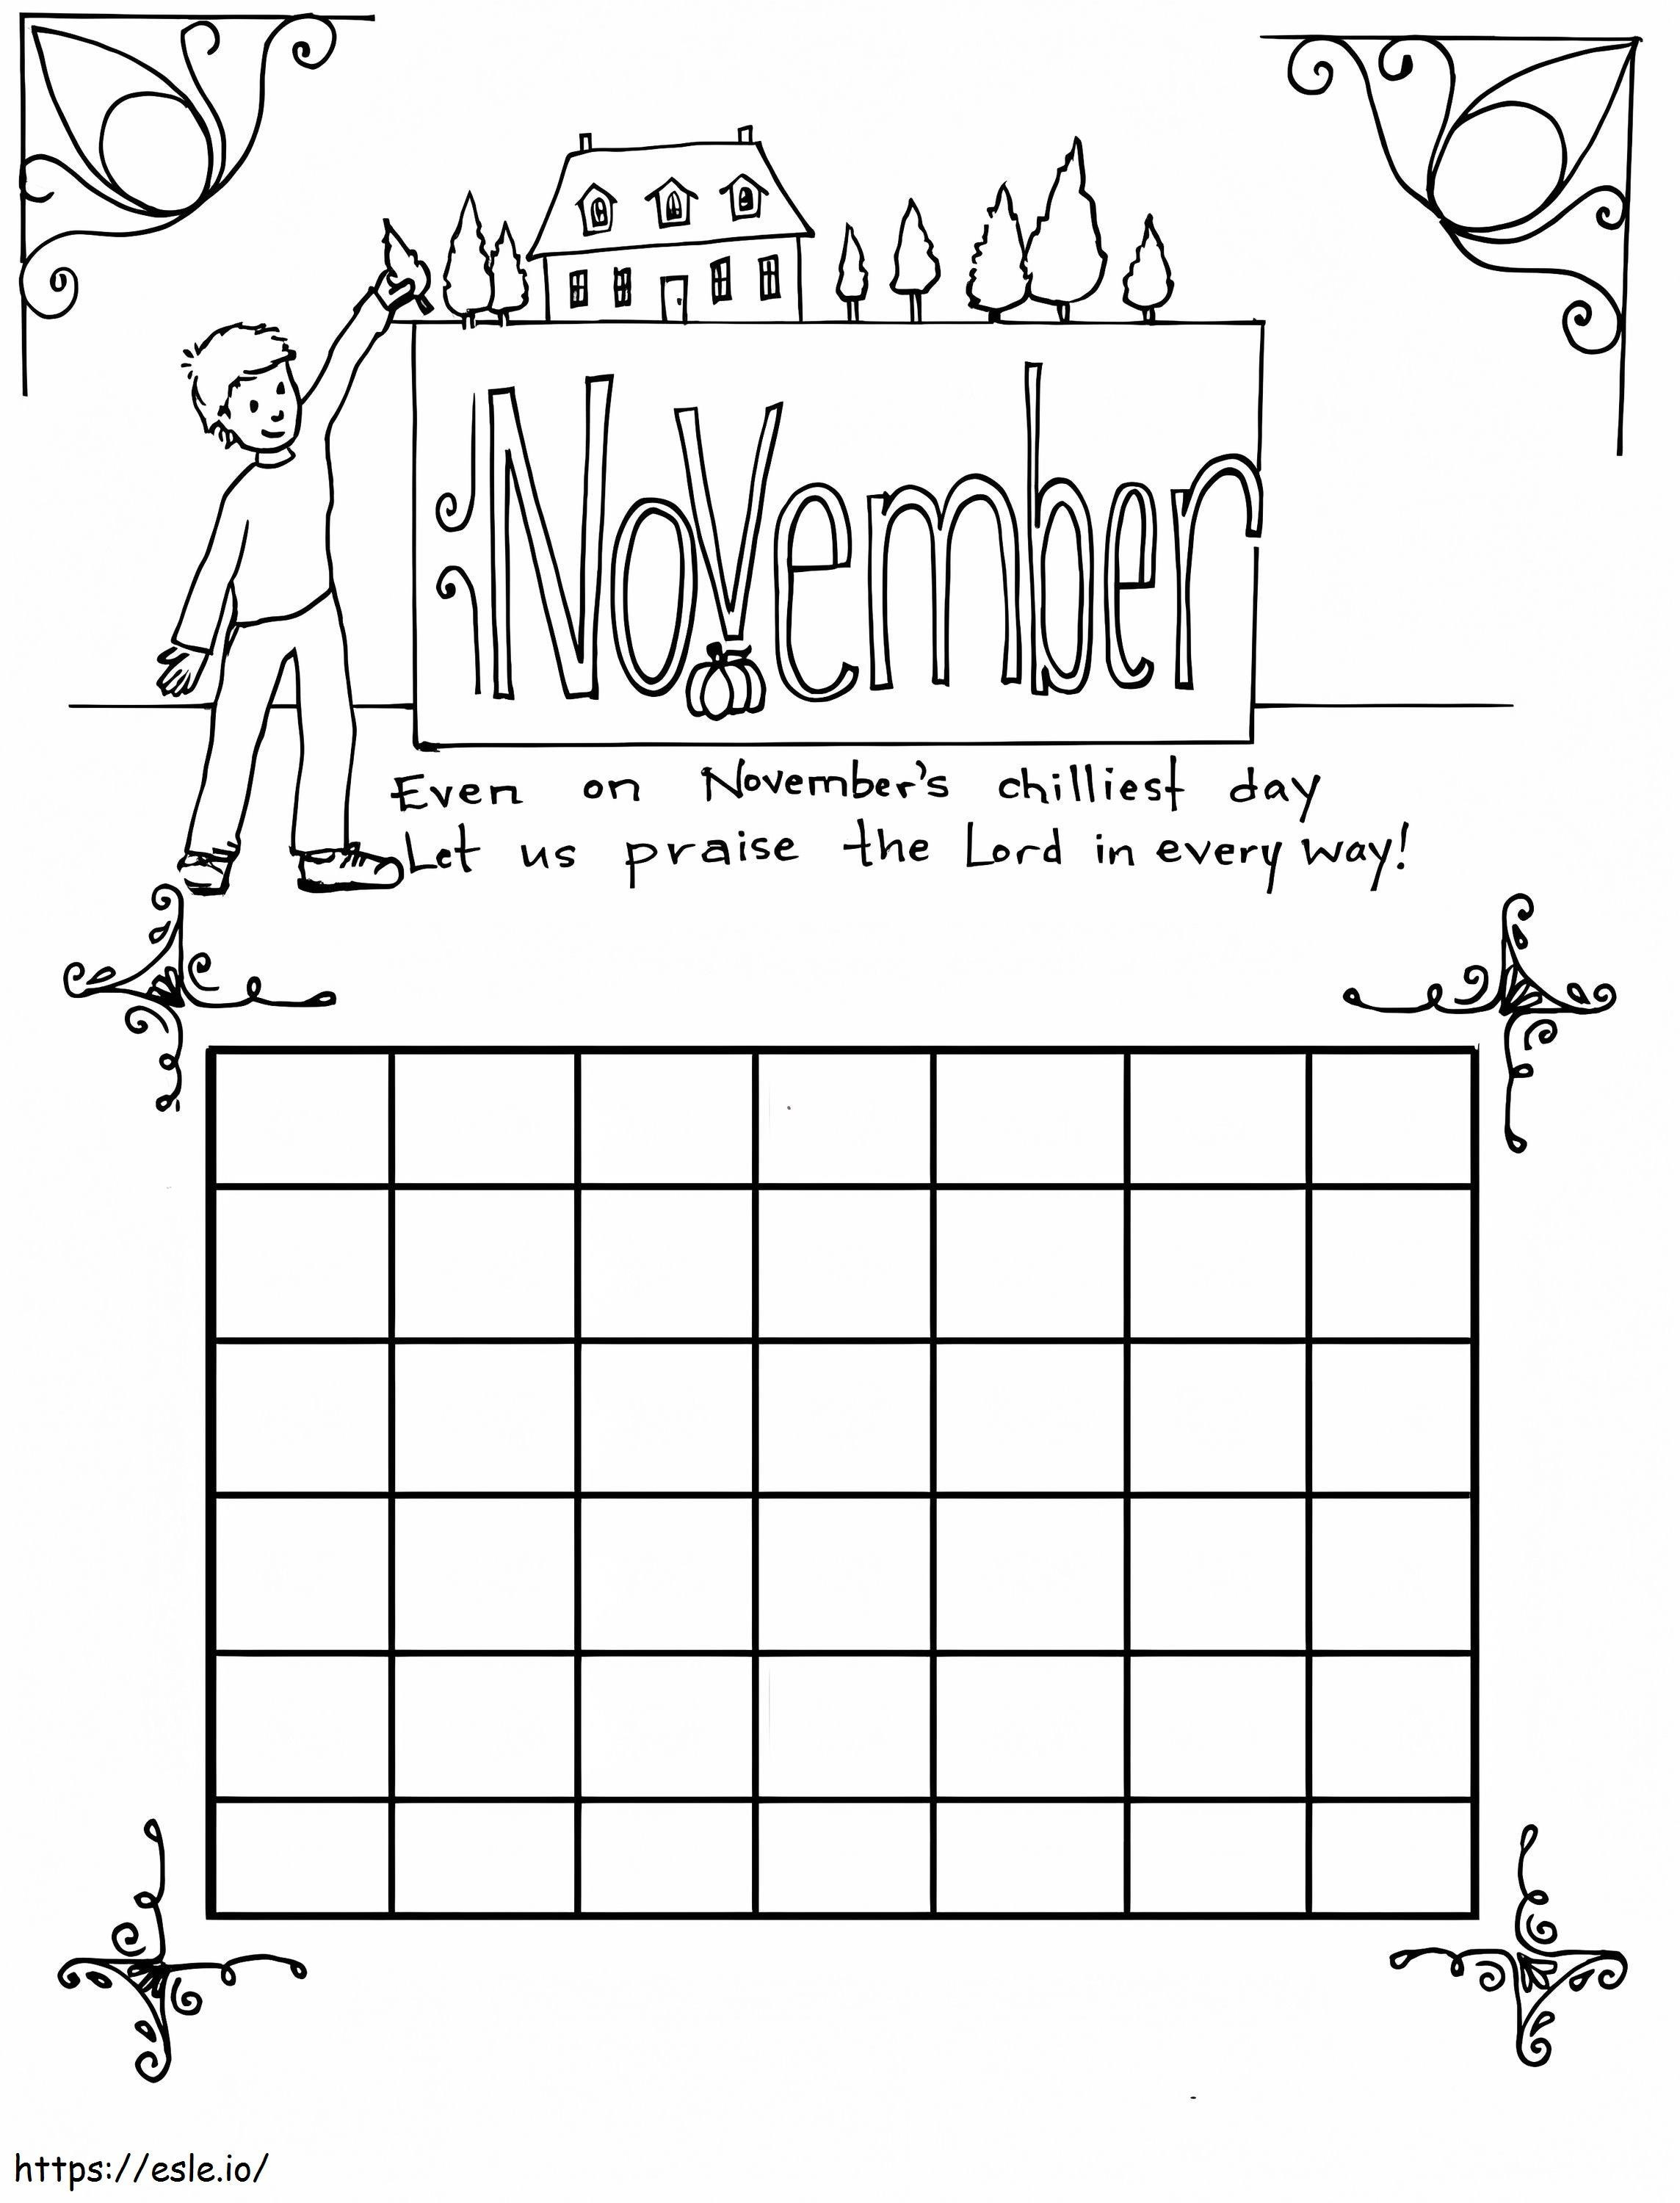 Calendario per il 1 novembre da colorare